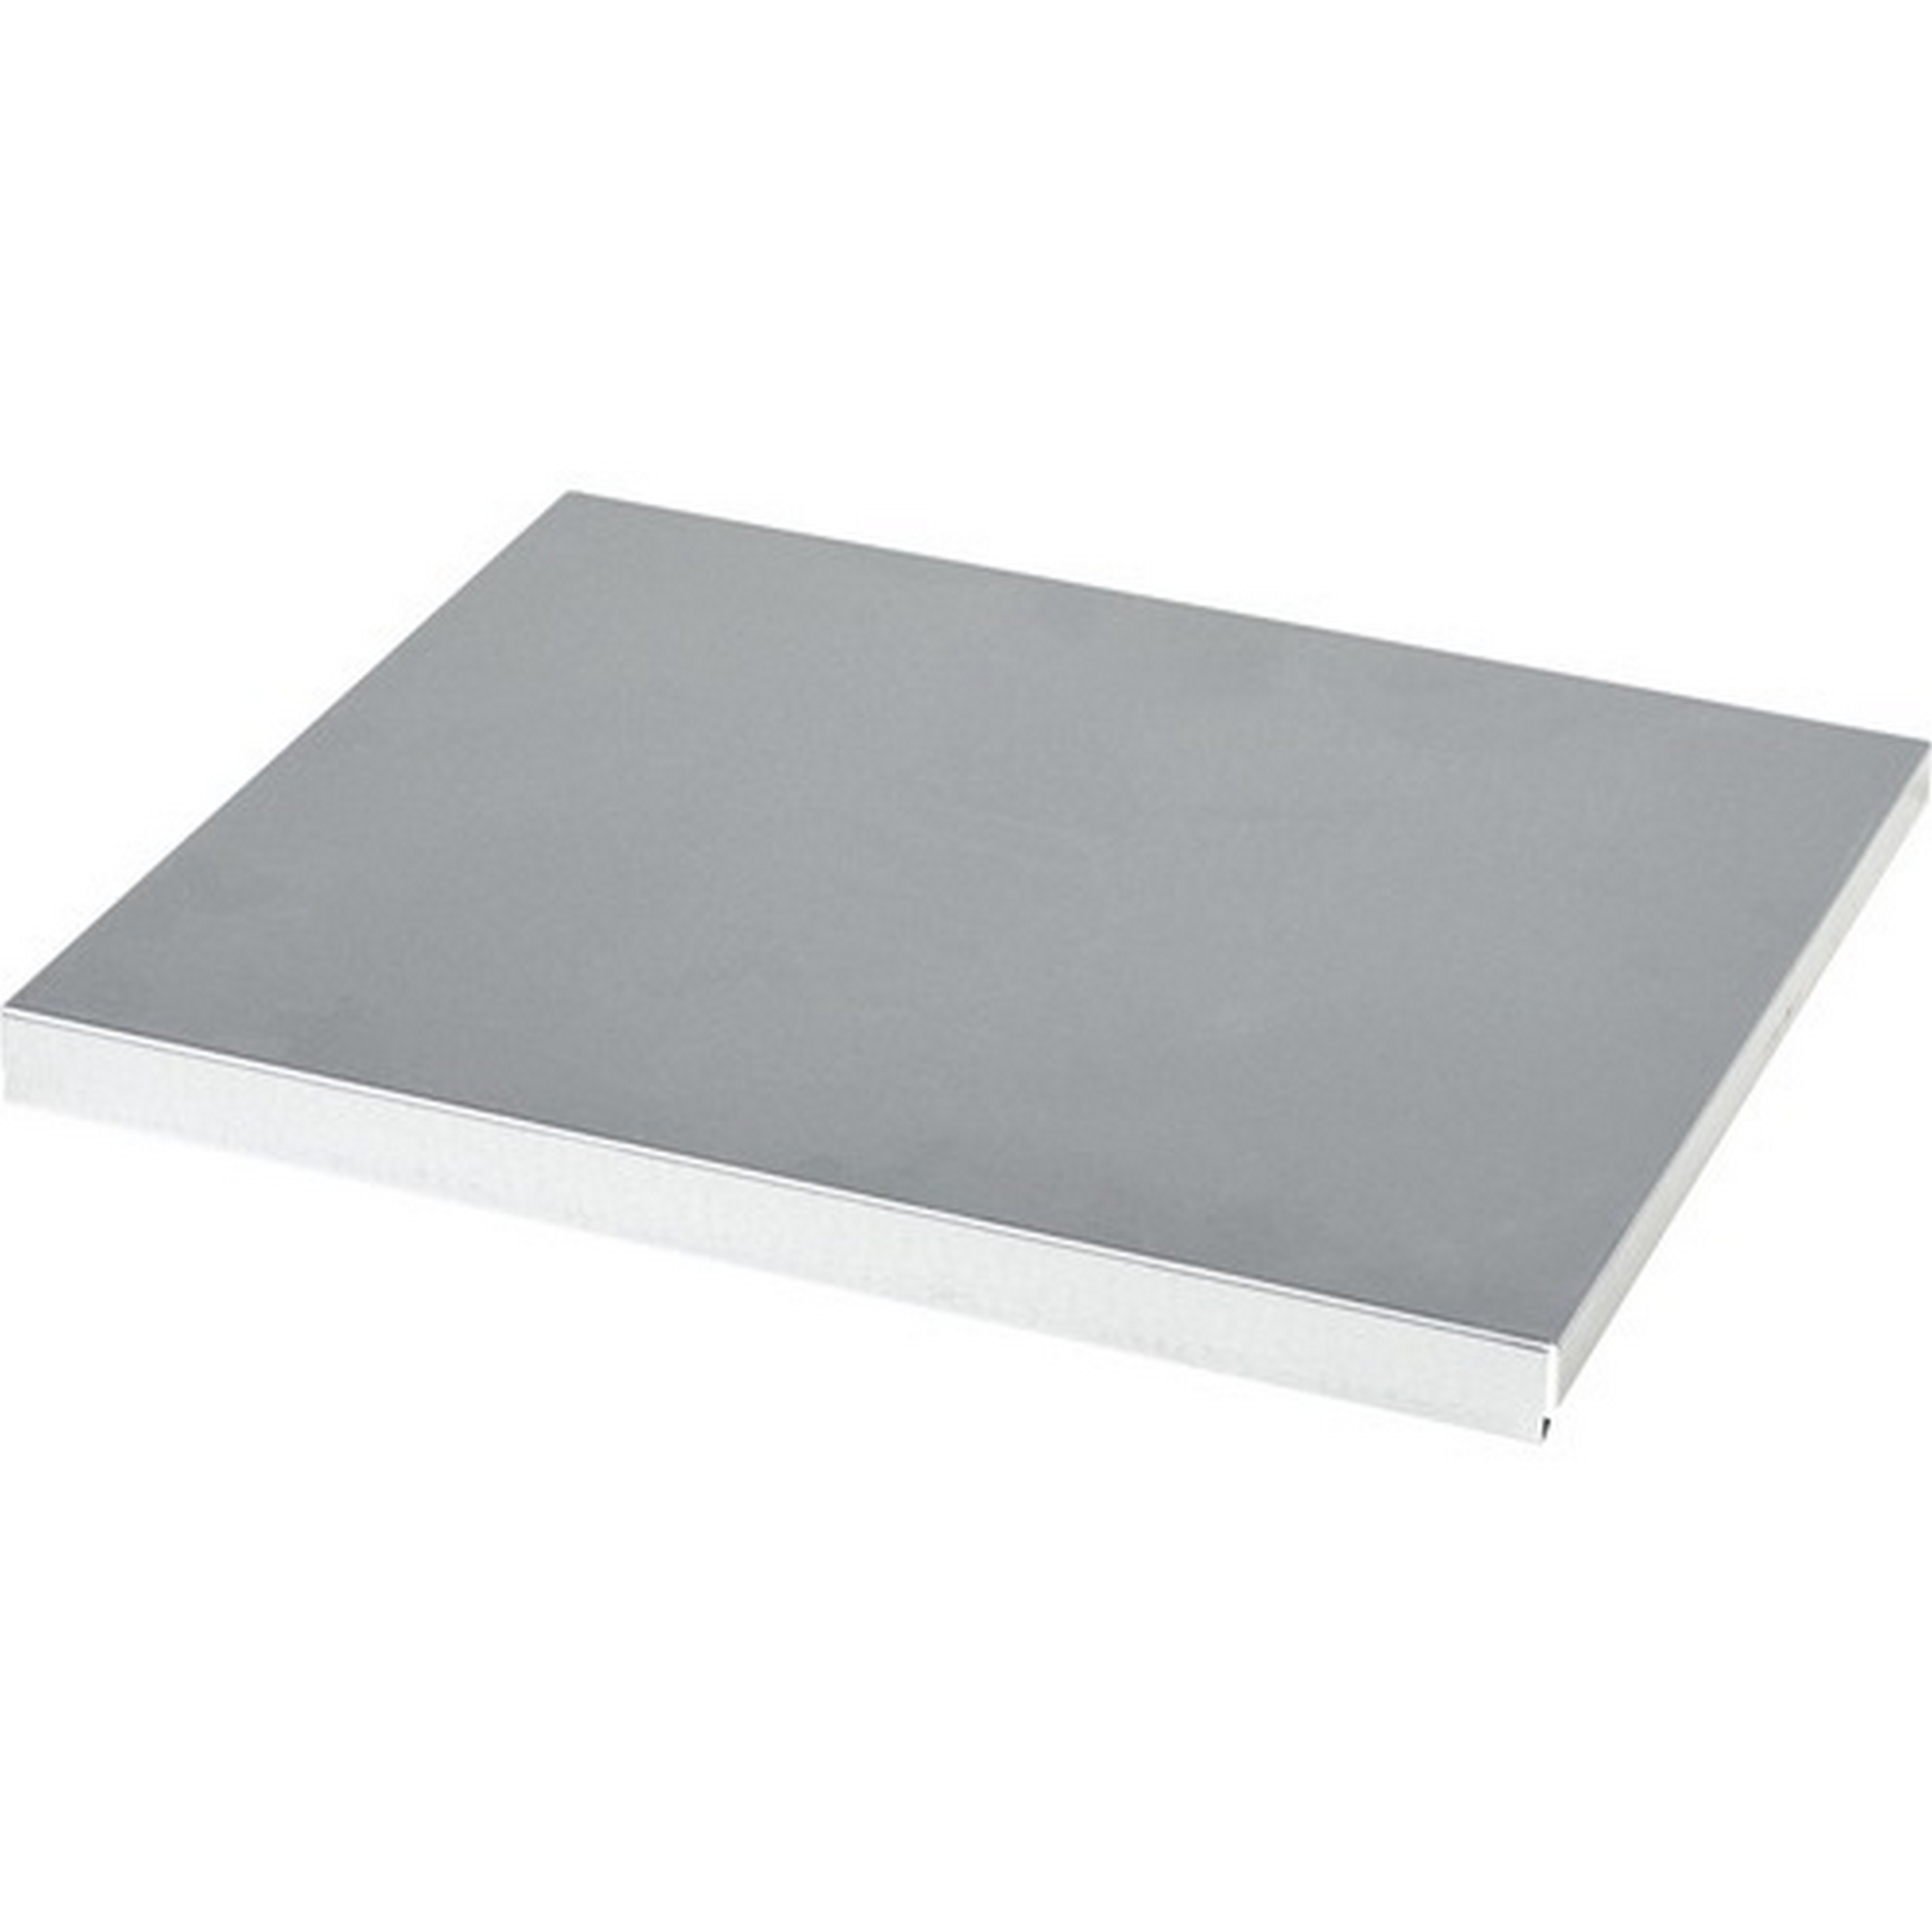 Einlegeboden für Hoch- und Materialschränke 45,5 x 38 x 4 cm + product picture